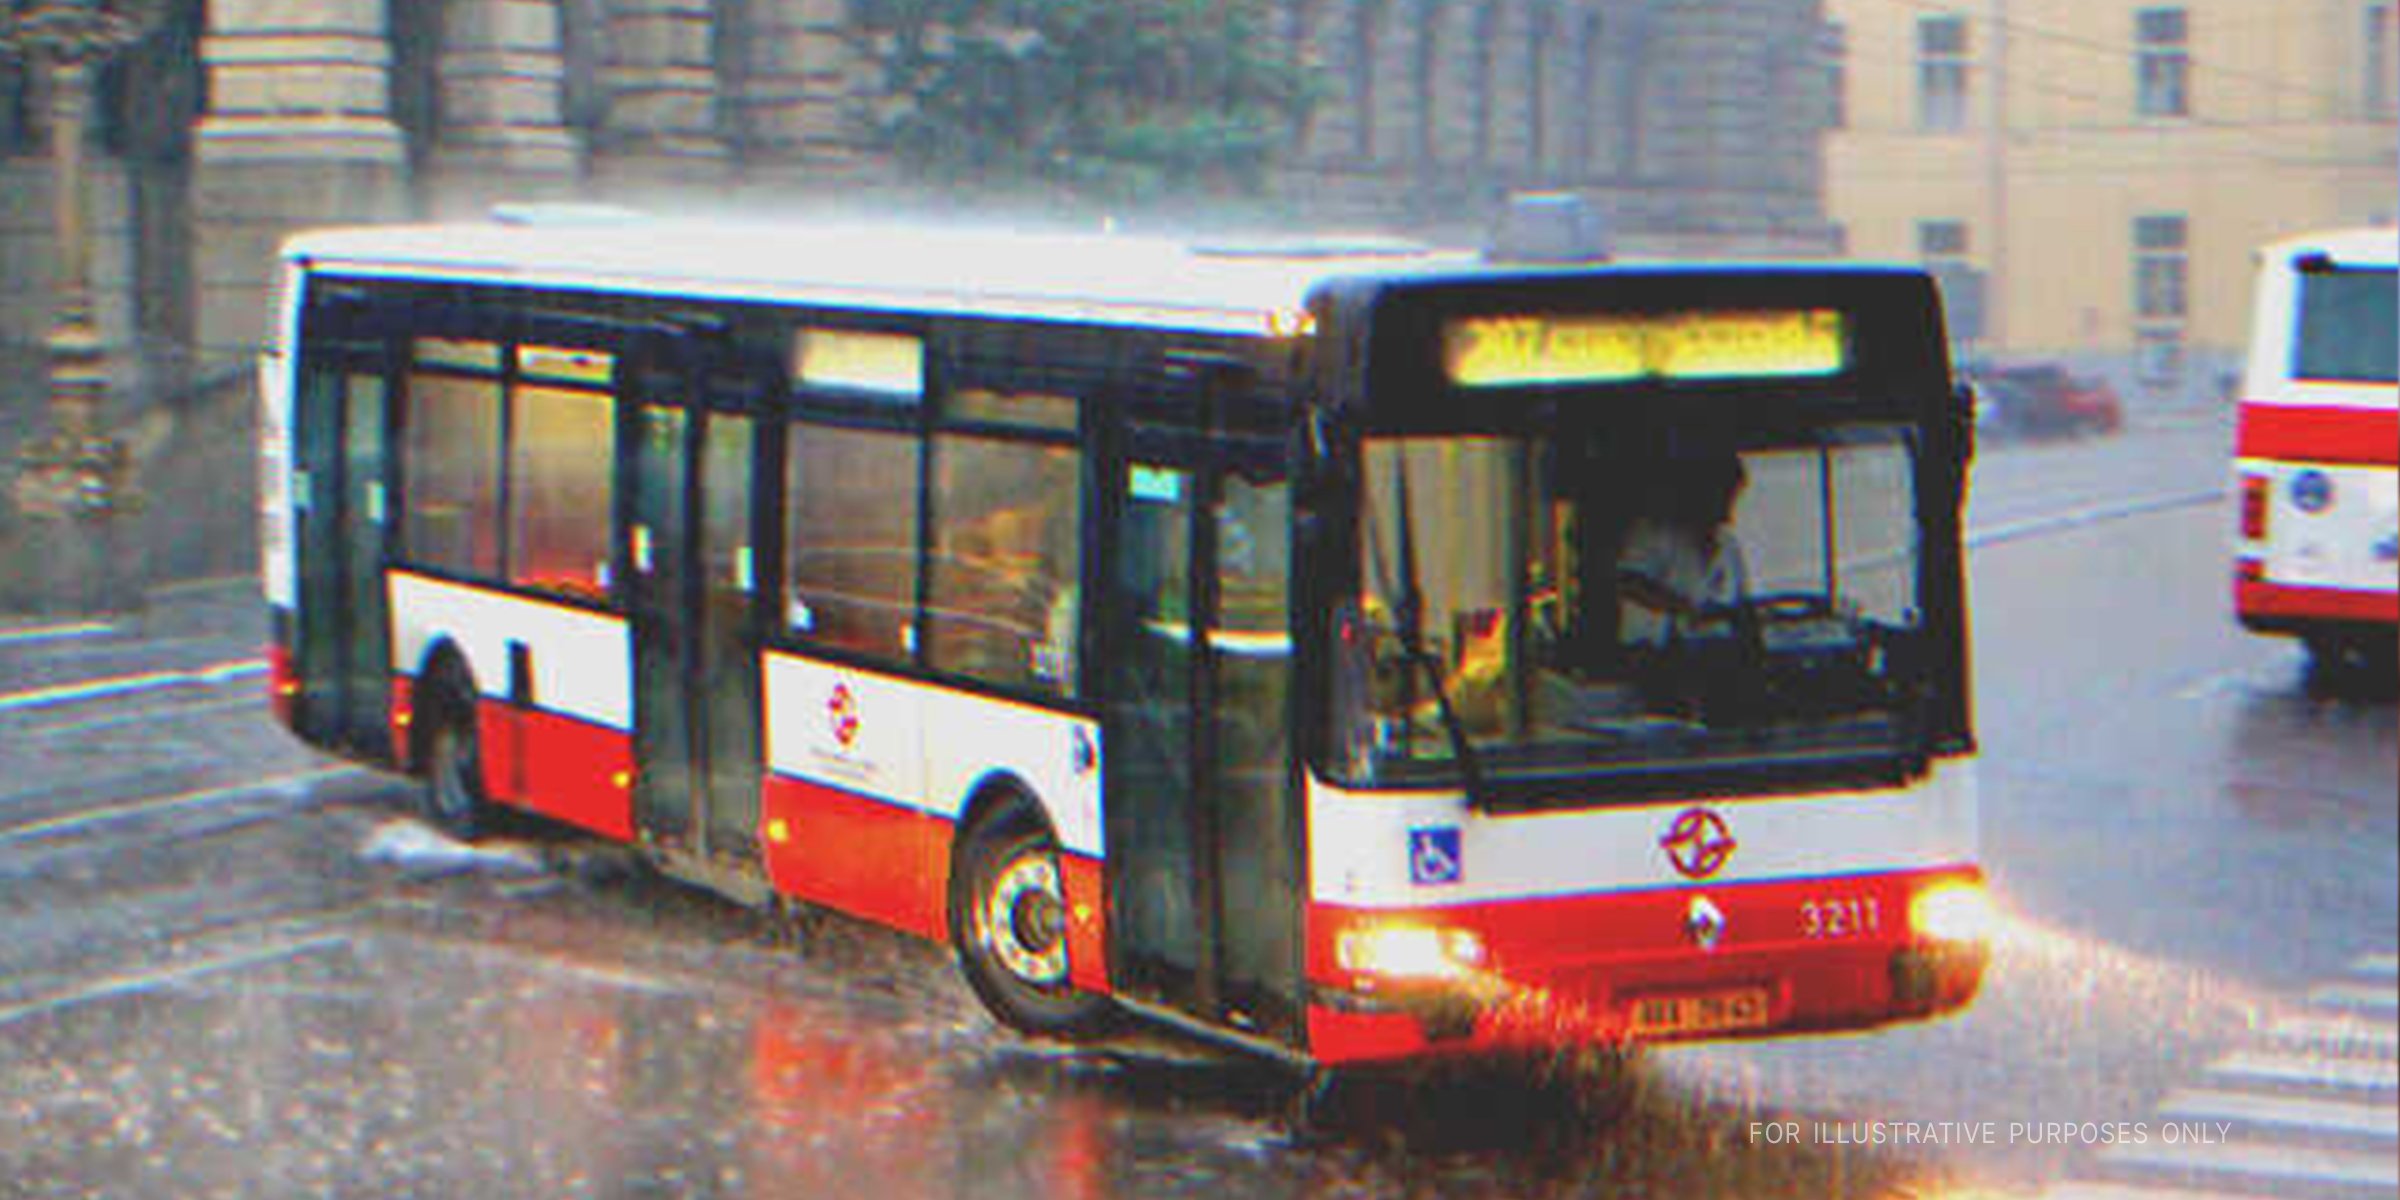 Ein Bus auf der Straße an einem regnerischen Tag | Quelle: Shutterstock